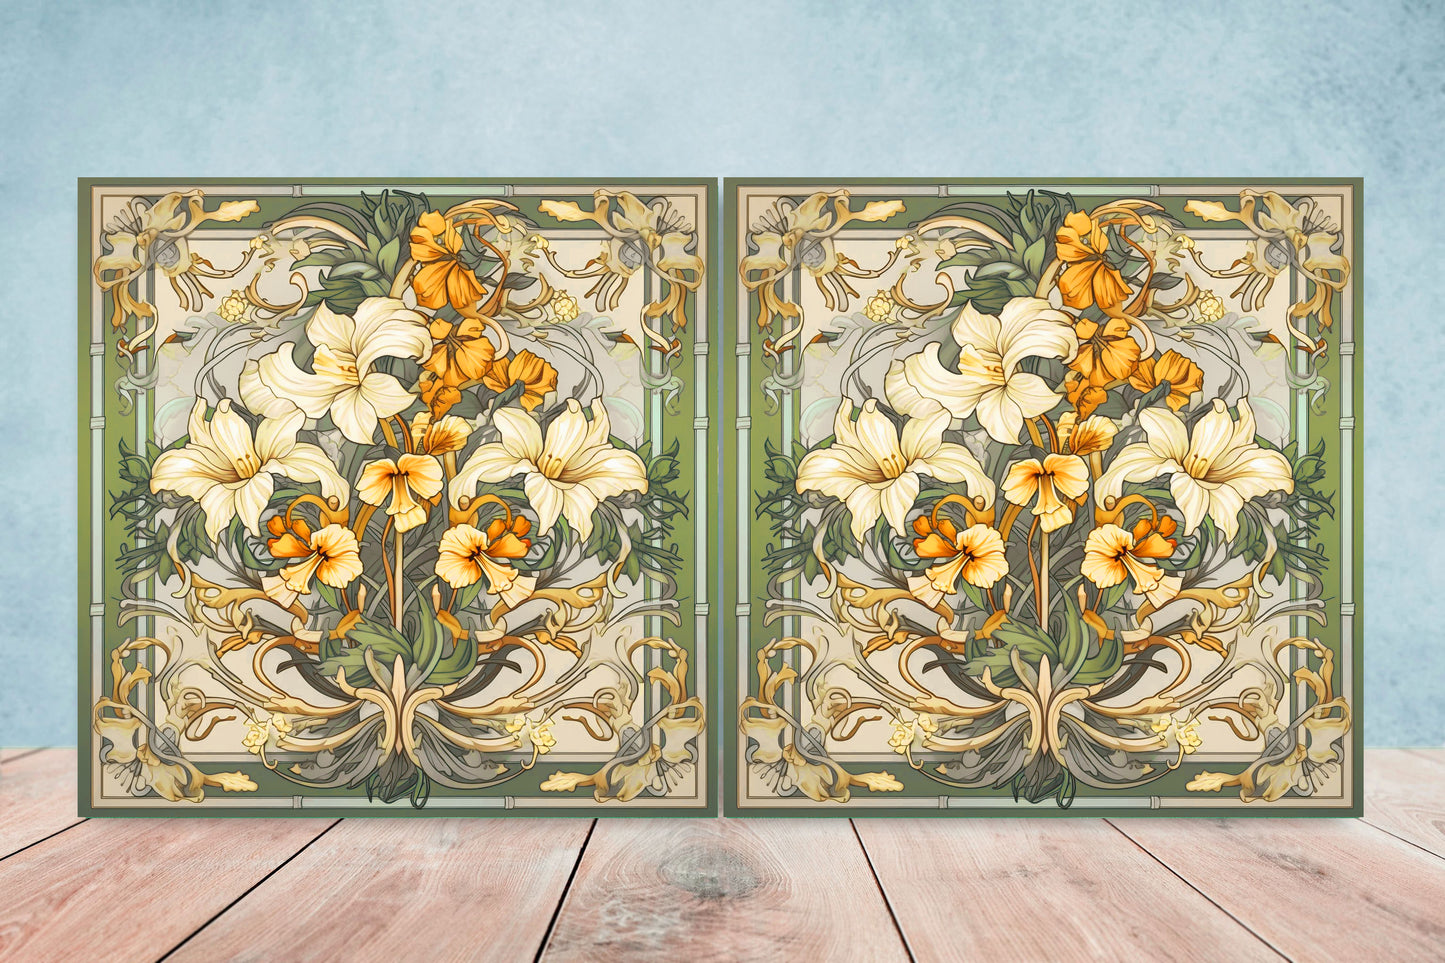 Art Nouveau Flower Ceramic tiles - Set of 2 Art Nouveau Wall Decor Tiles - Kitchen Backsplash Tiles, Table Decorative Tiles, Bathroom Tiles